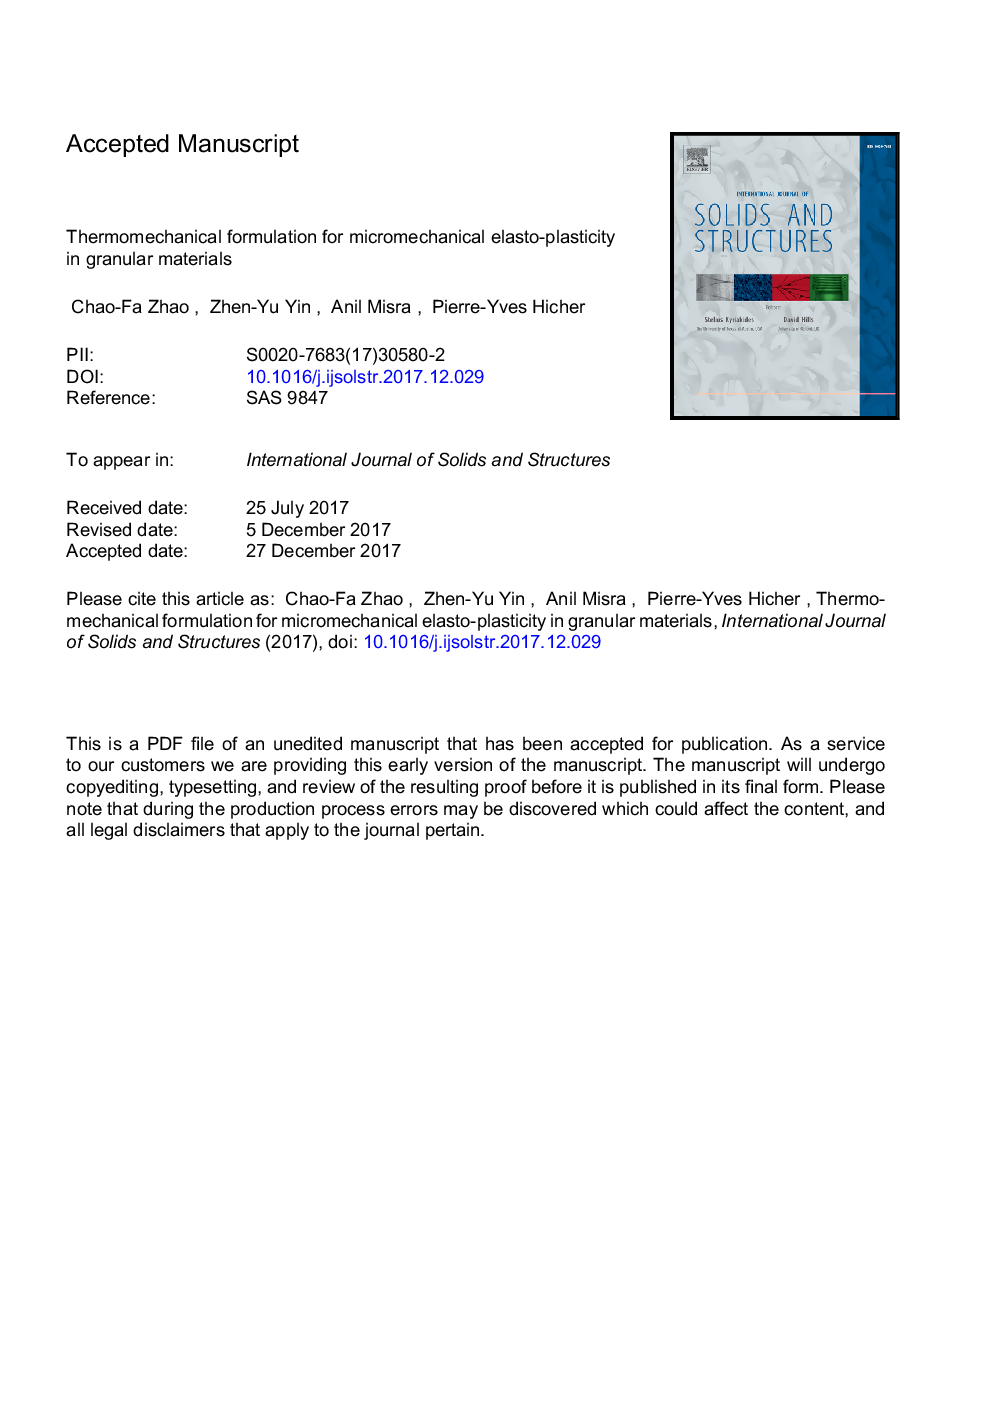 فرمول ترمومکانیکی برای الاستوکلاستیک میکروکانیکی در مواد گرانولی 